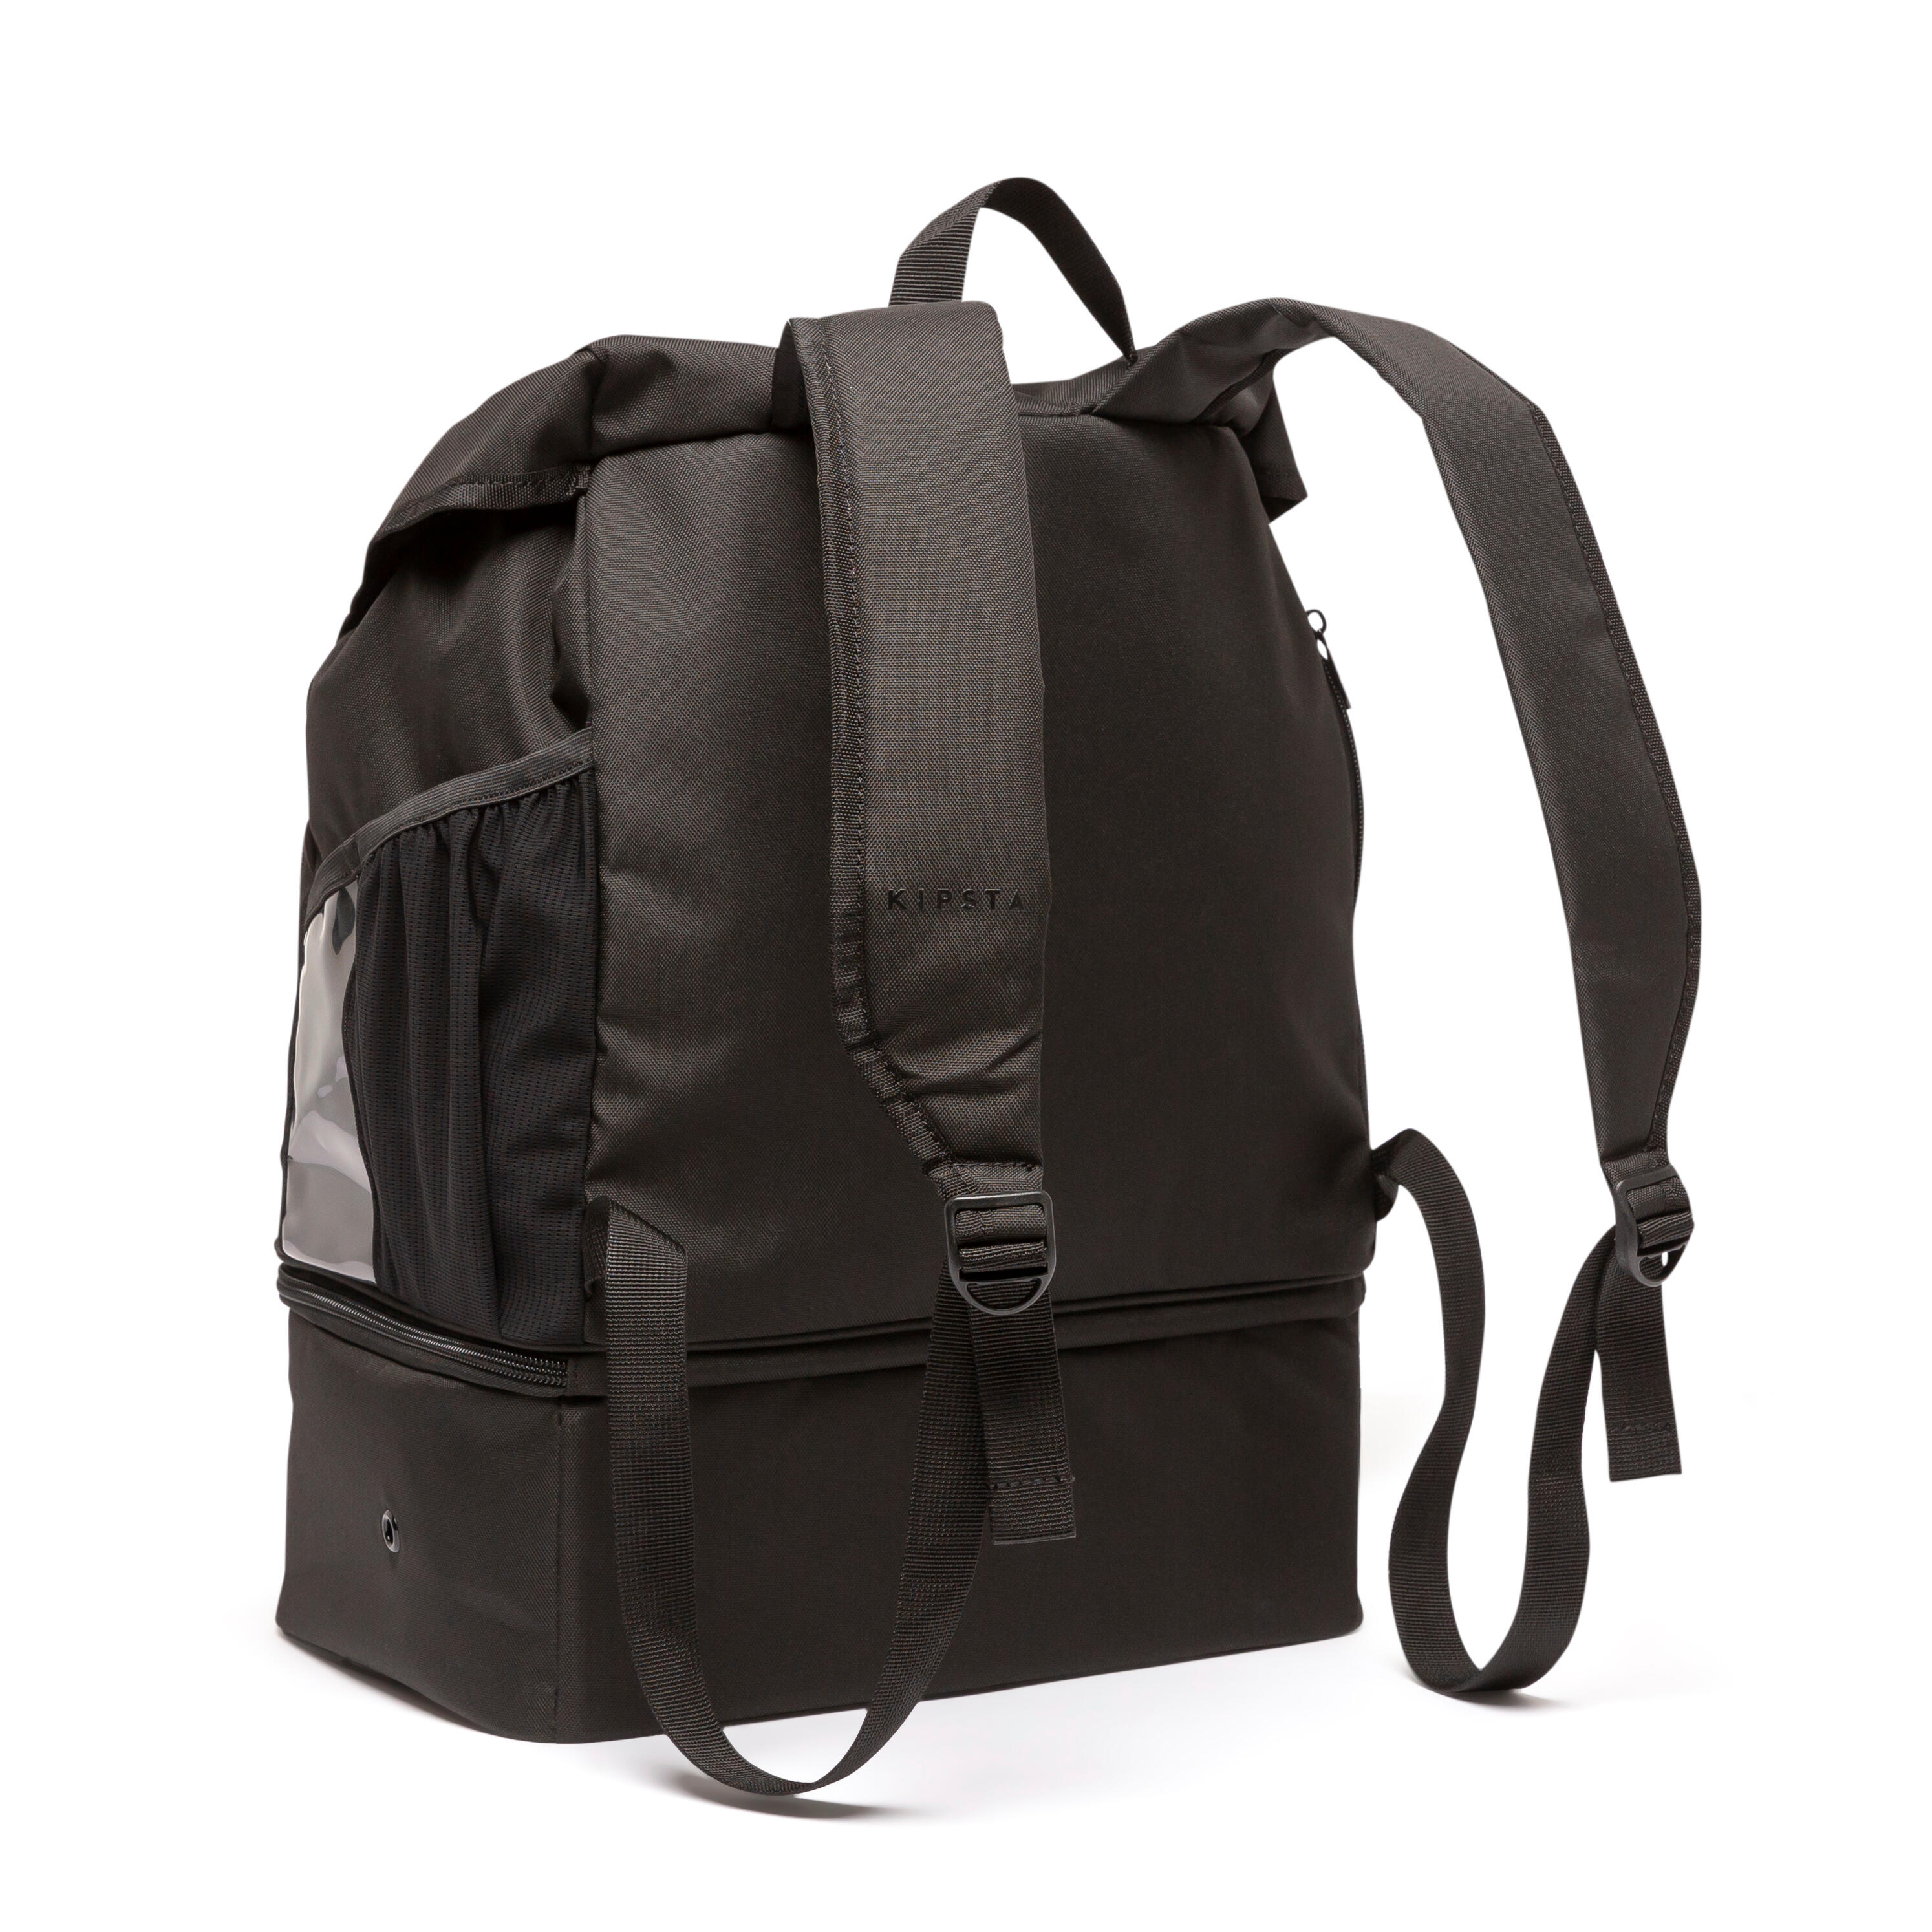 30 L Backpack Hardcase - Black 6/8